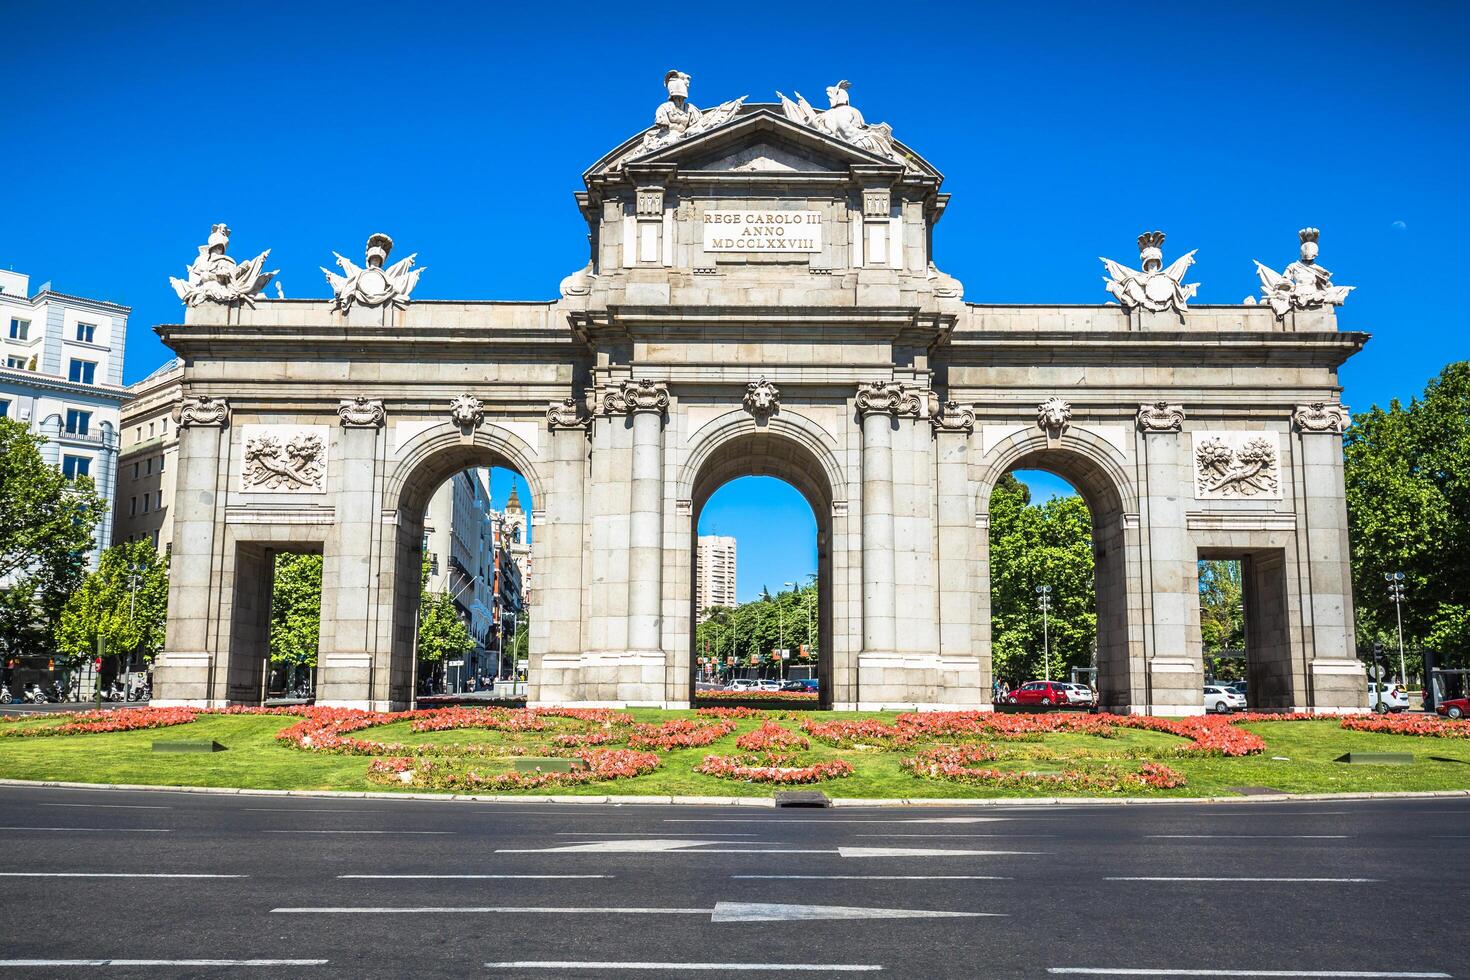 alcala porte puerta de alcala - monument dans le indépendance carré dans Madrid, Espagne photo